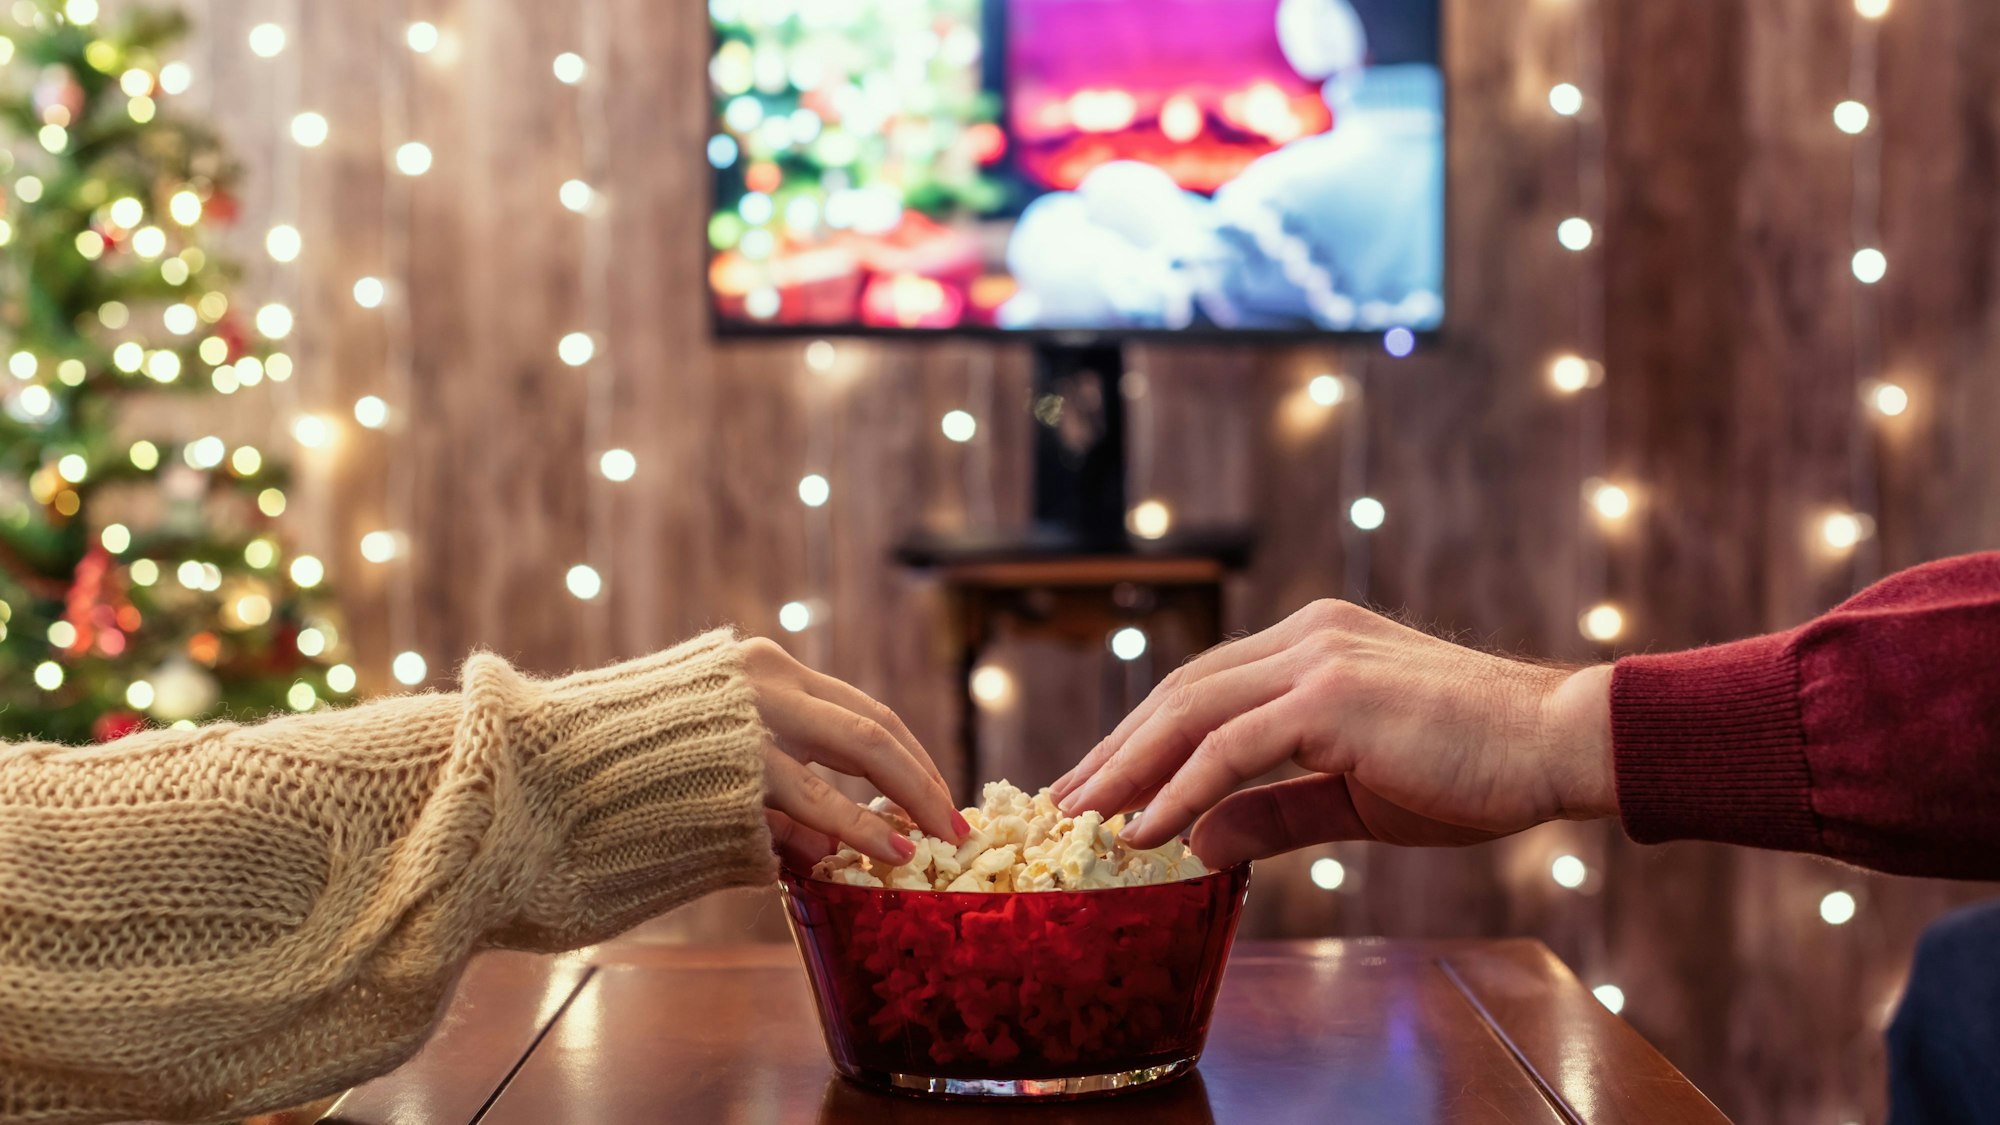 Zwei Hände greifen in eine Popcorn-Schüssel. Im Hintergrund sind verschwommen ein Fernsehen, ein Weihnachtsbaum und Lichterketten.